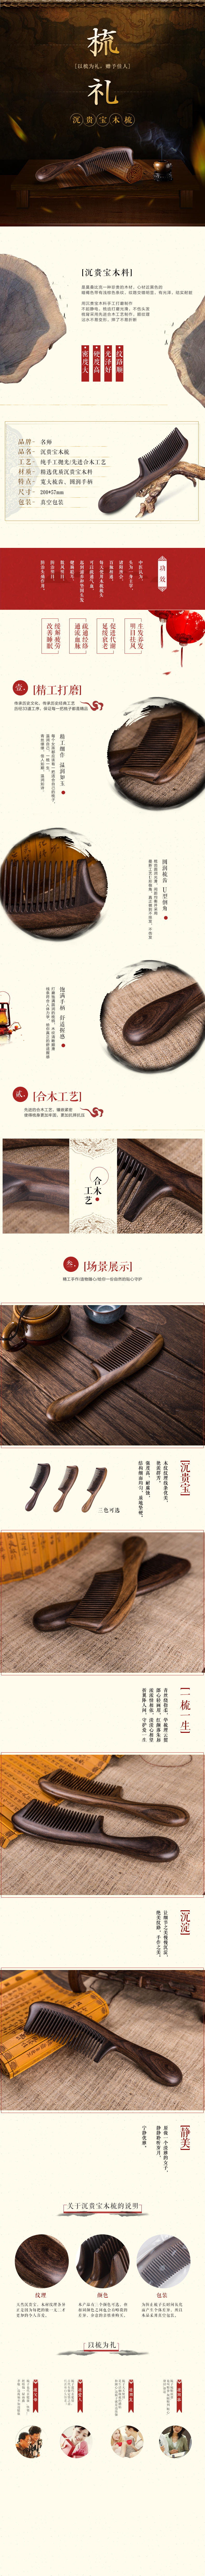 淘宝美工格子梳子中国风详情设计作品